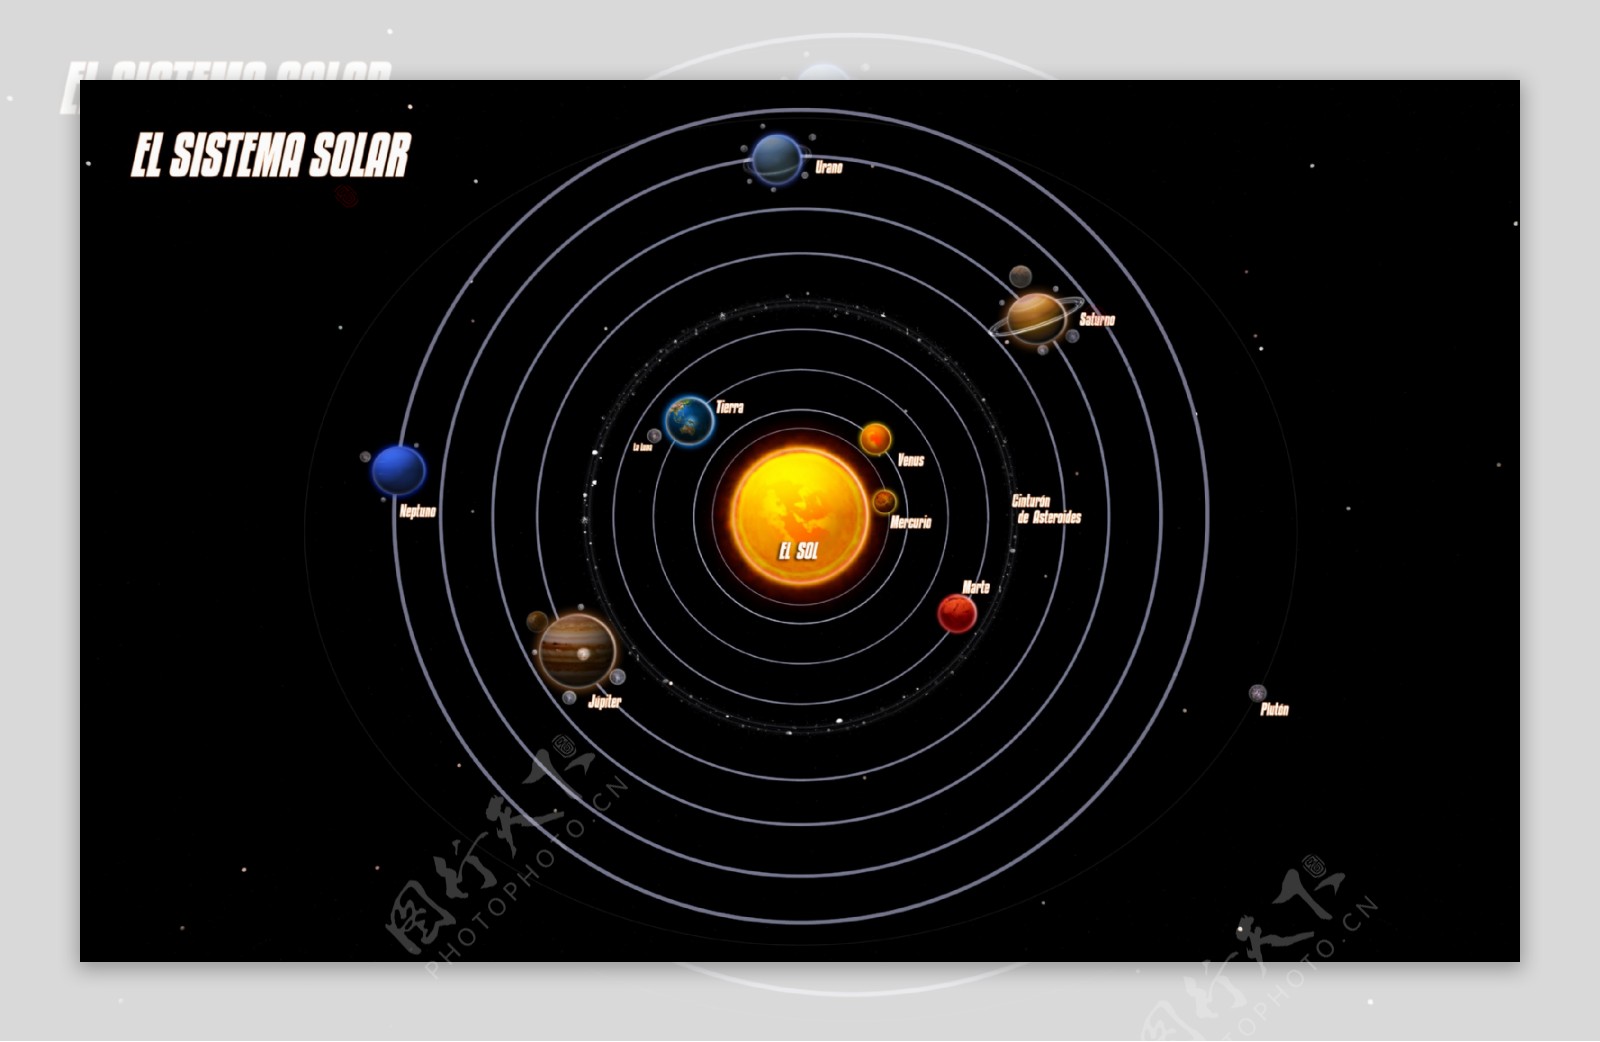 太阳系图片